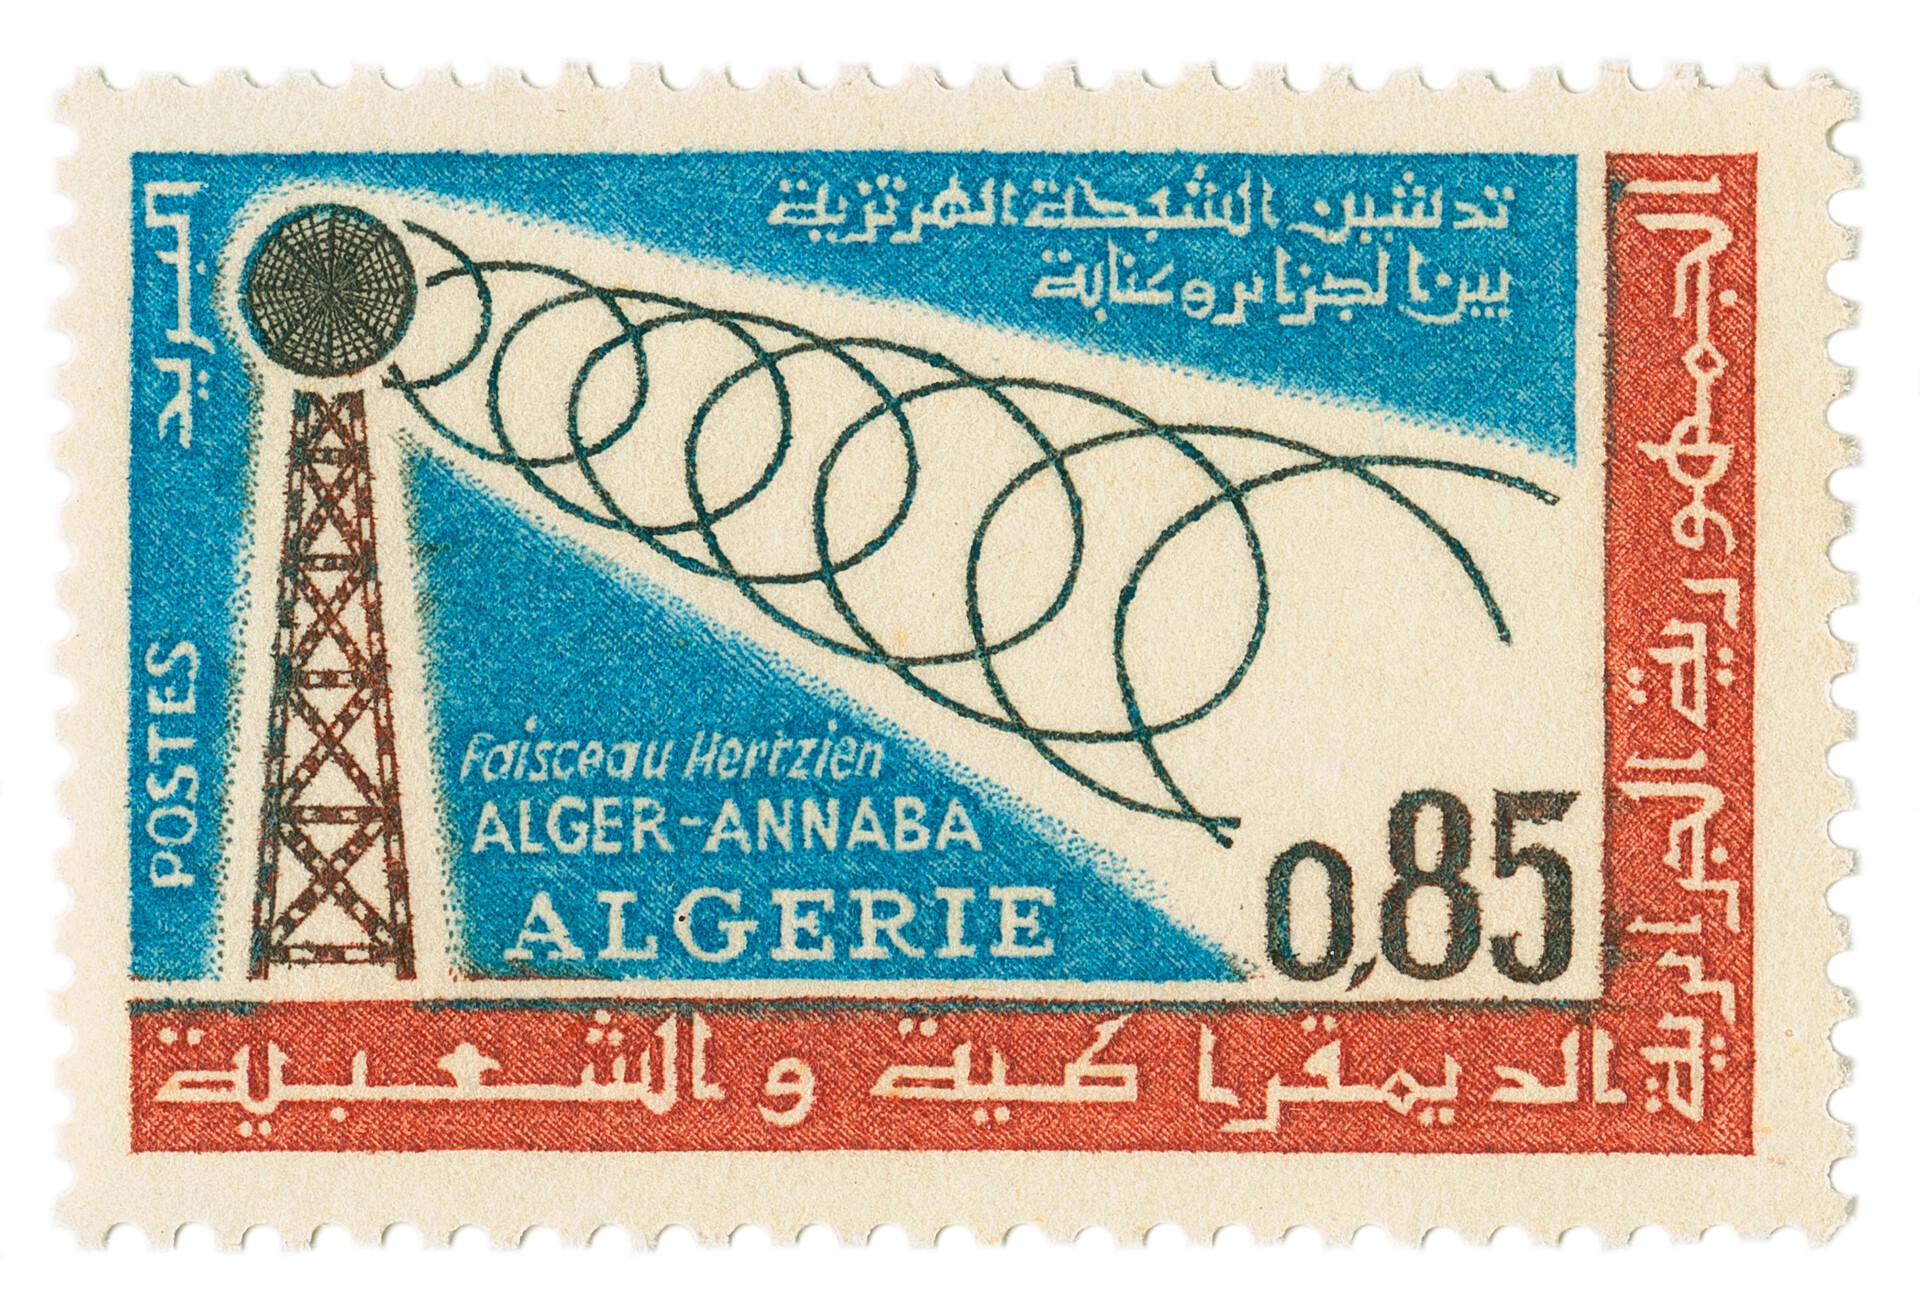 Timbre Algérie, 1964. Courtesy FRAC Provence-Alpes-Côte d’Azur